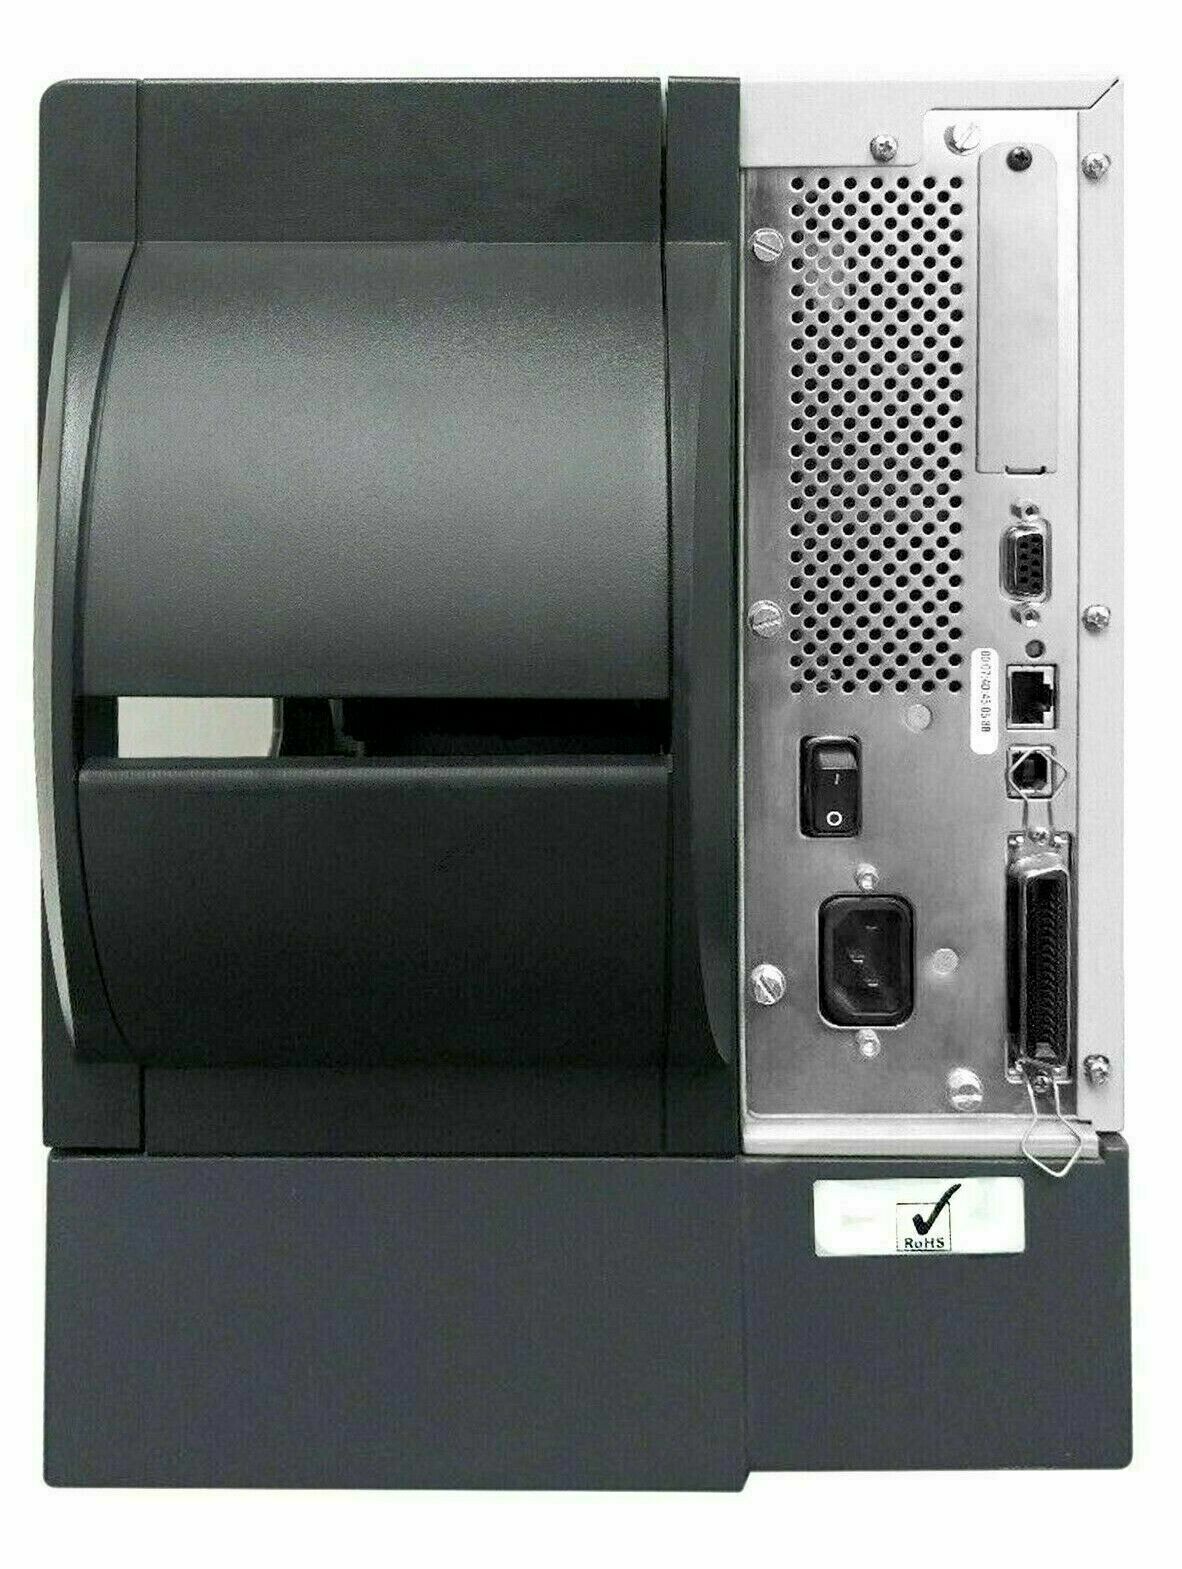 Zebra ZM400 200dpi NEW Printhead Thermal Transfer Label Printer USB LAN